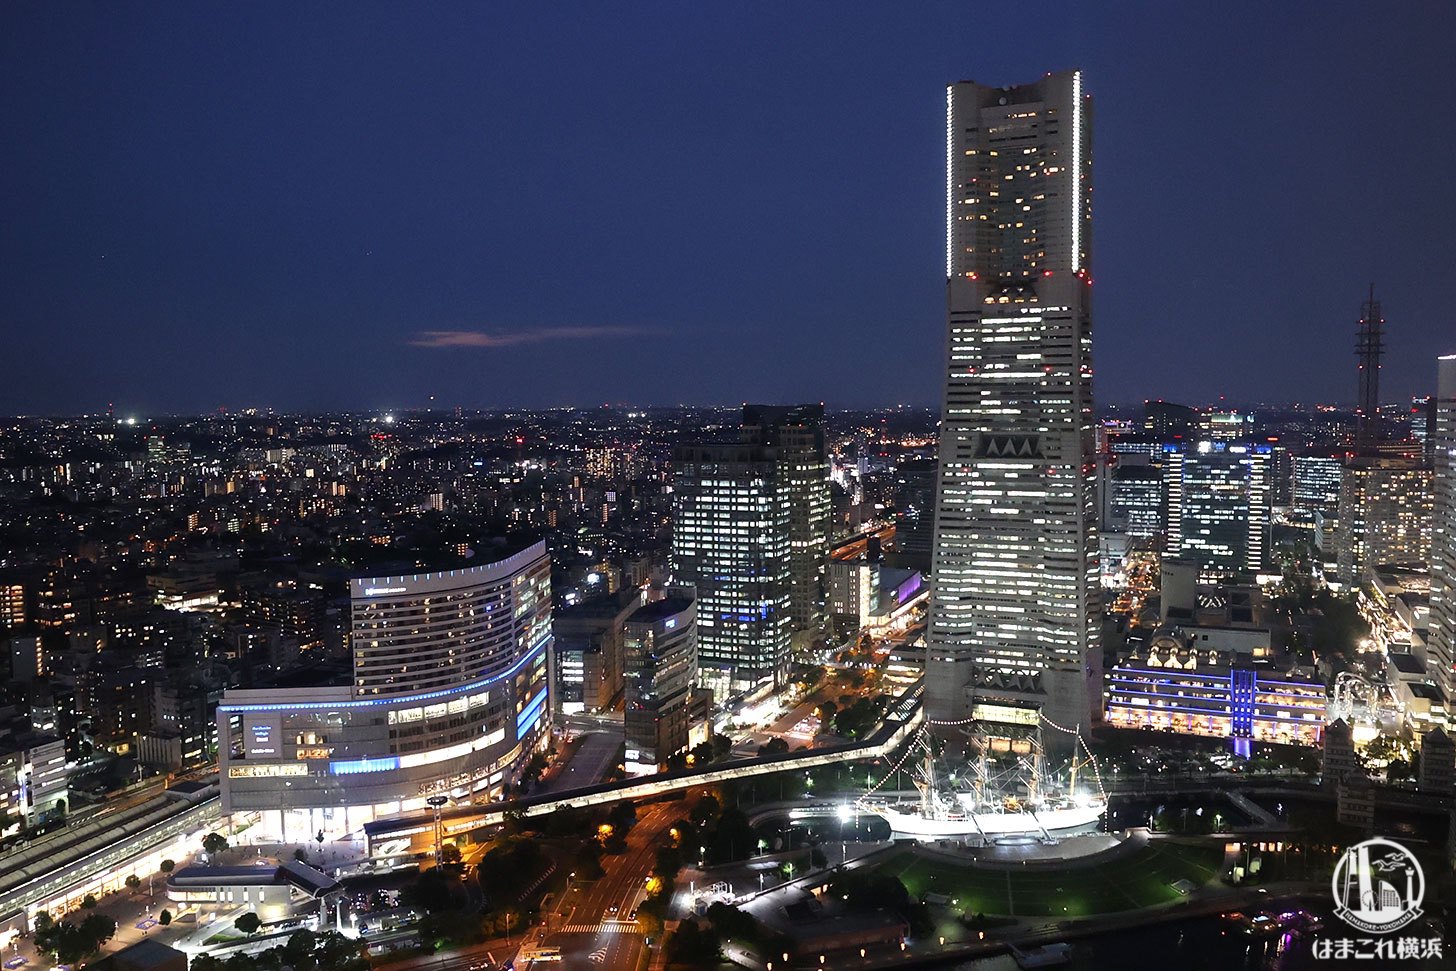 横浜北仲ノット無料展望台から見た夜景 横浜ランドマークタワーや横浜駅側